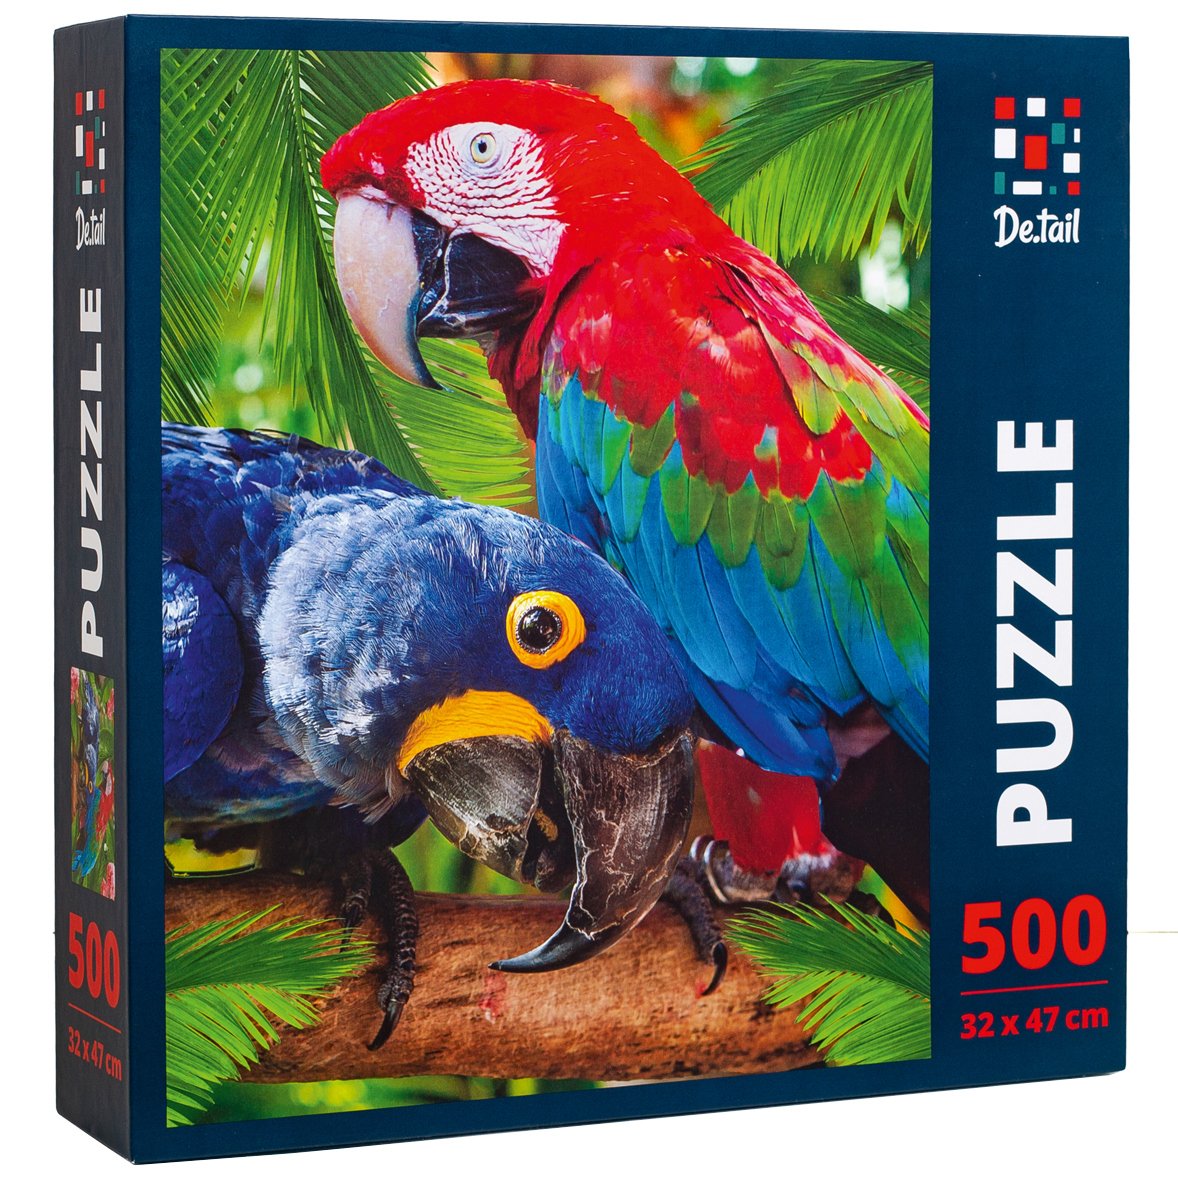 Пазл De.tail Parrots, 500 элементов - фото 1